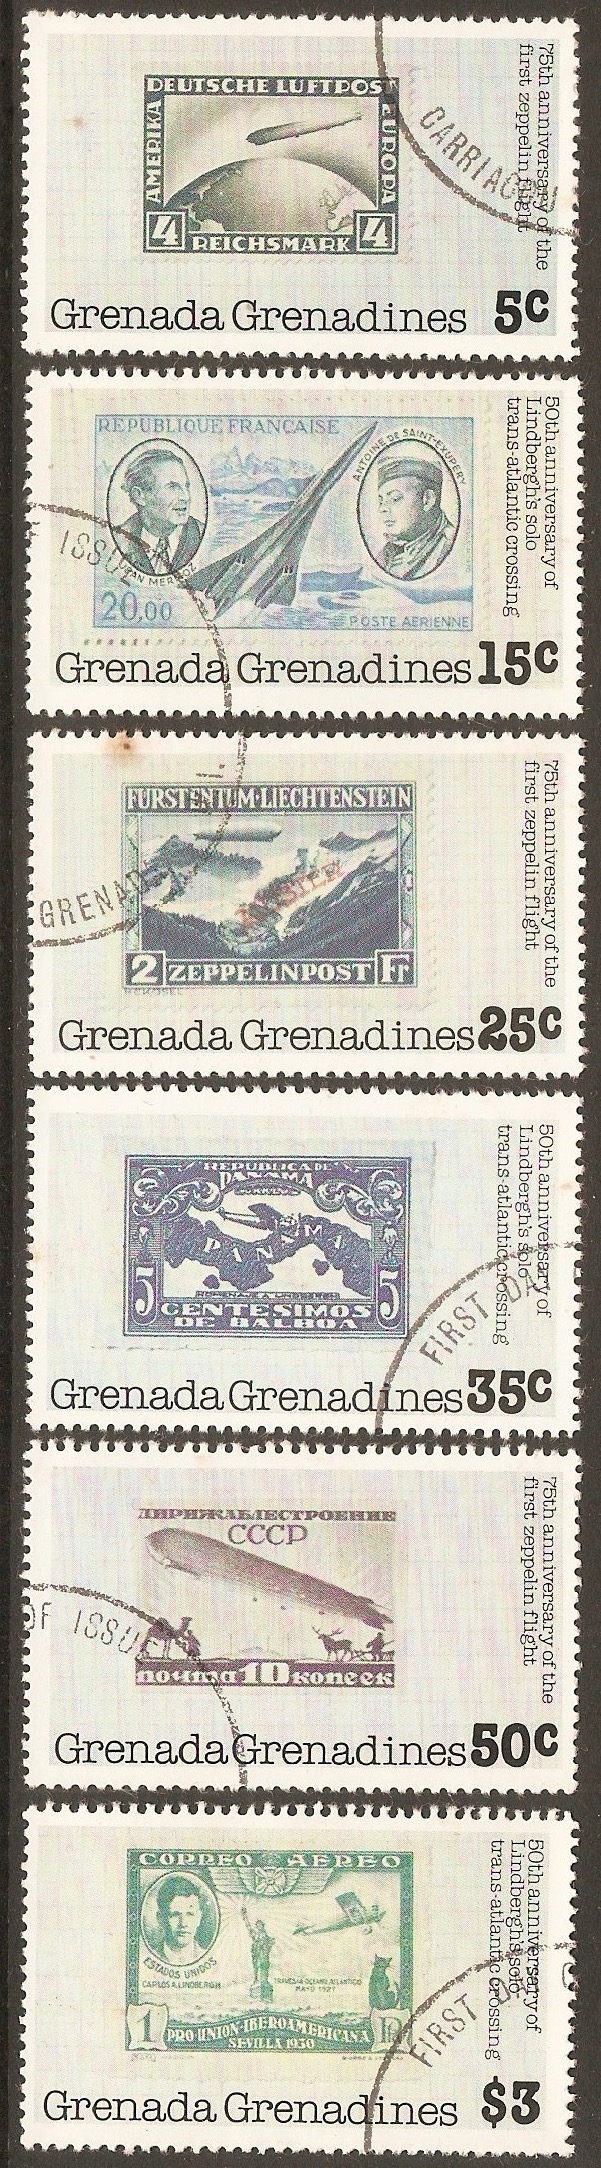 Grenadines 1978 Zeppelin Anniversary. SG265-SG270.